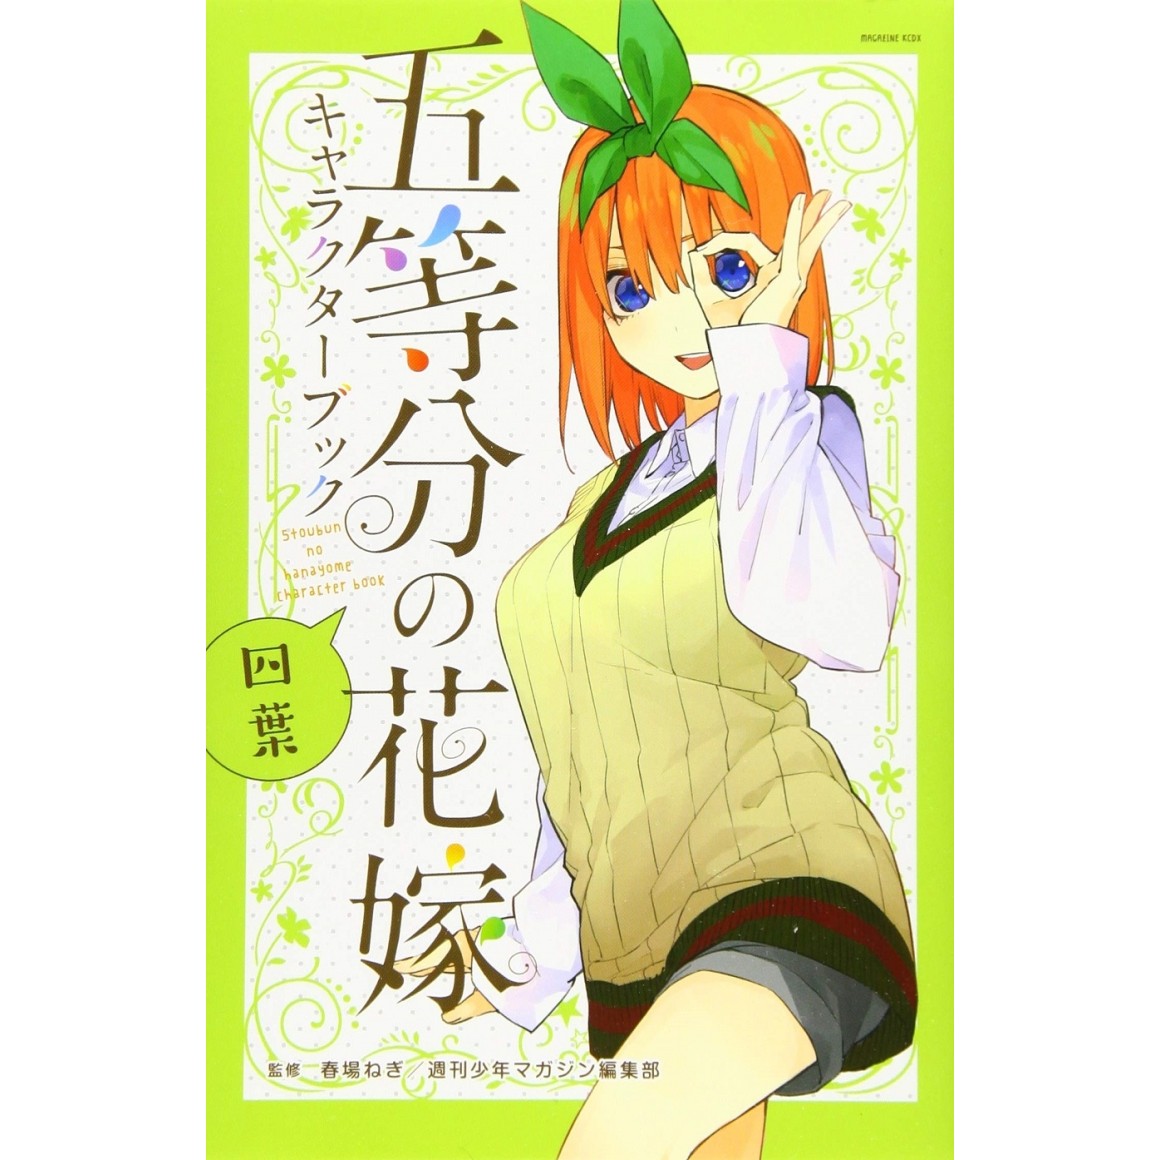 Go-tobun no Hanayome (The Quintessential Quintuplets) Character book Vol.5